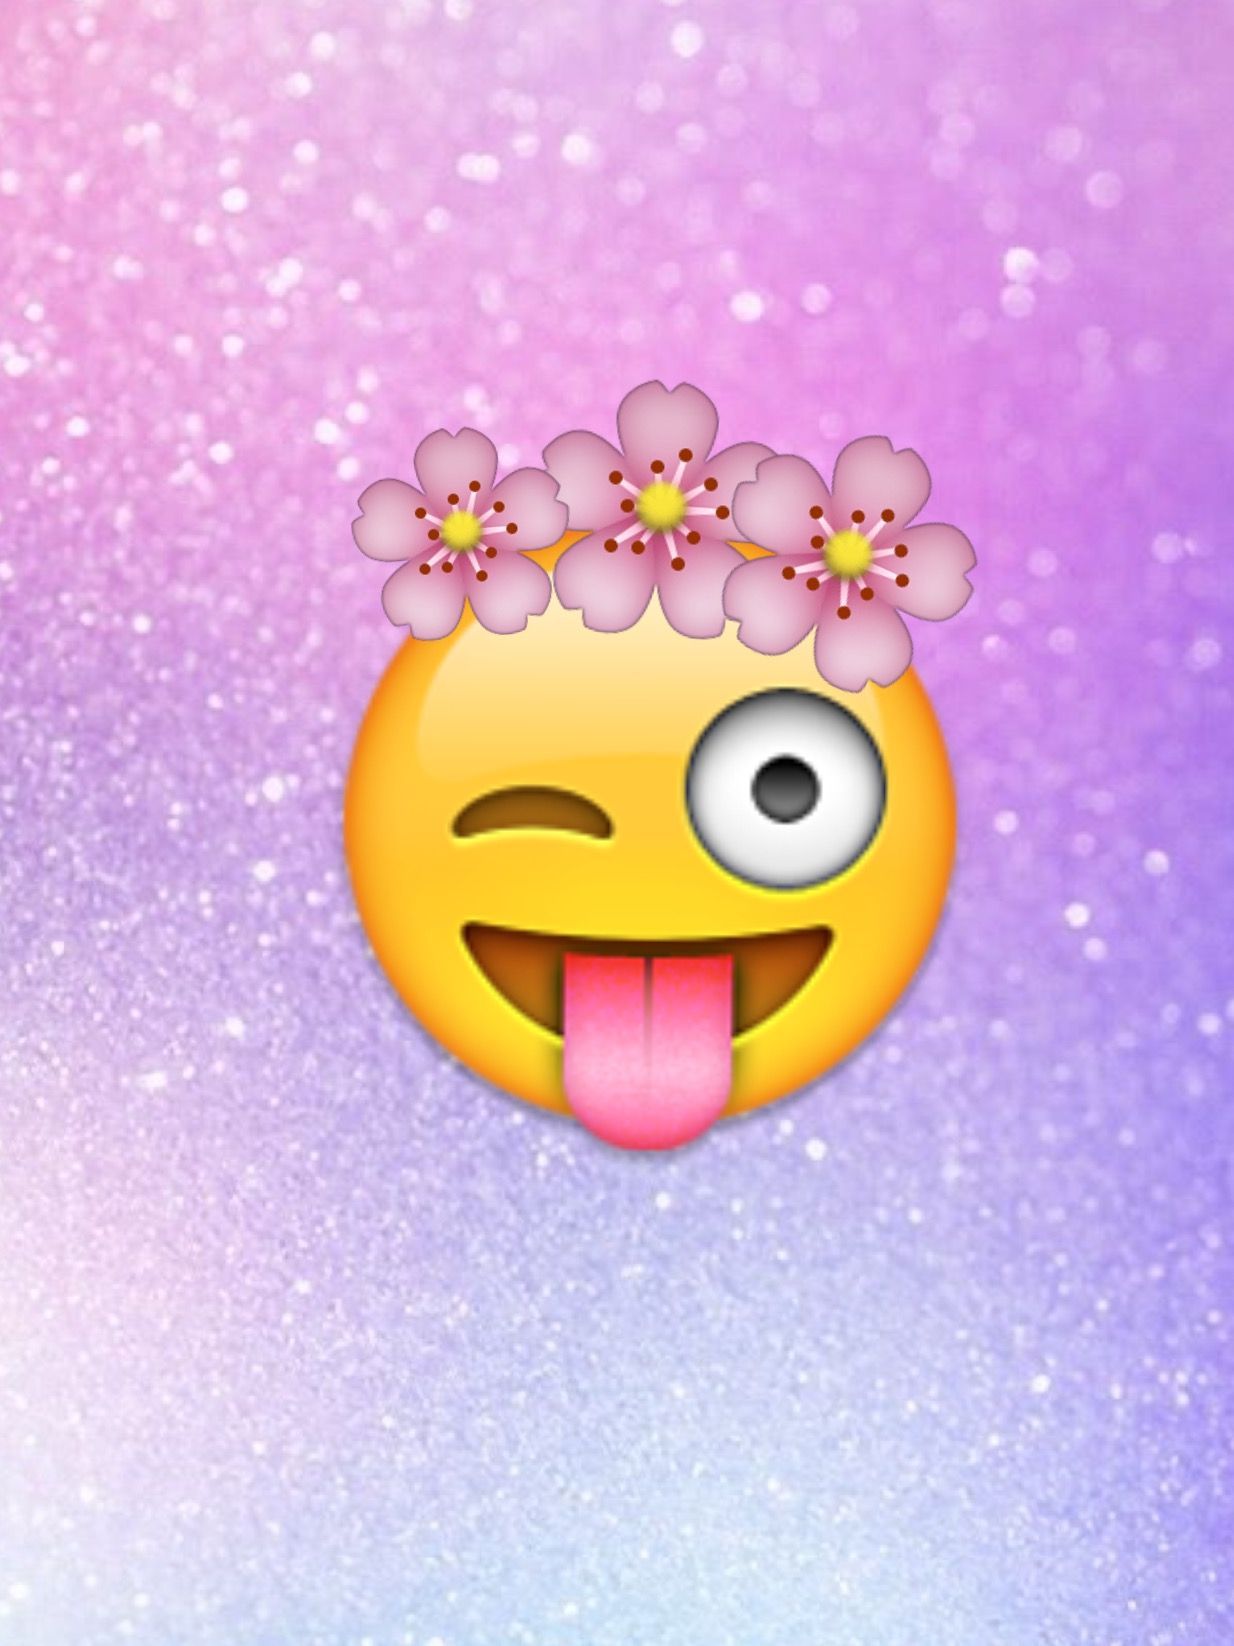 Free download Girly Emoji Wallpapers Top Free Girly Emoji ...